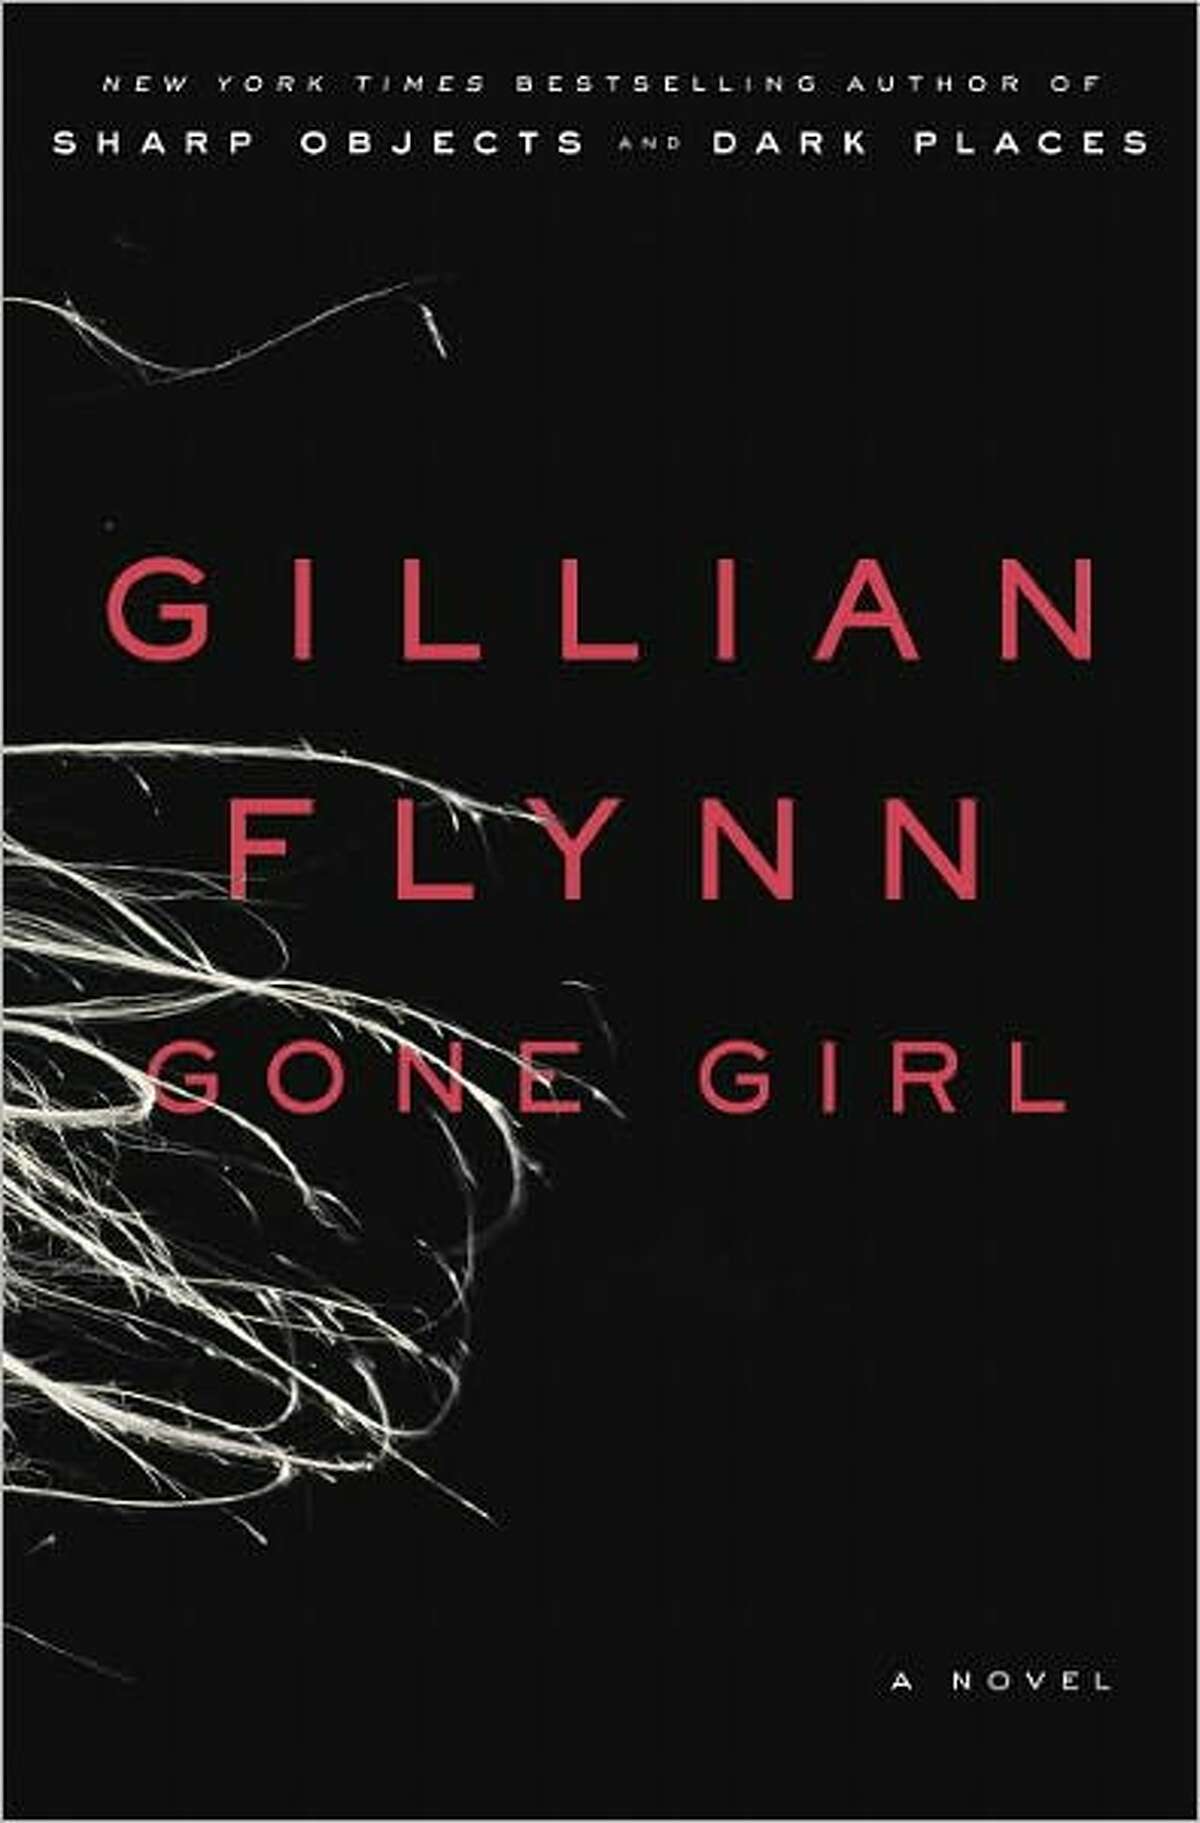 "Gone Girl," by Gillian Flynn